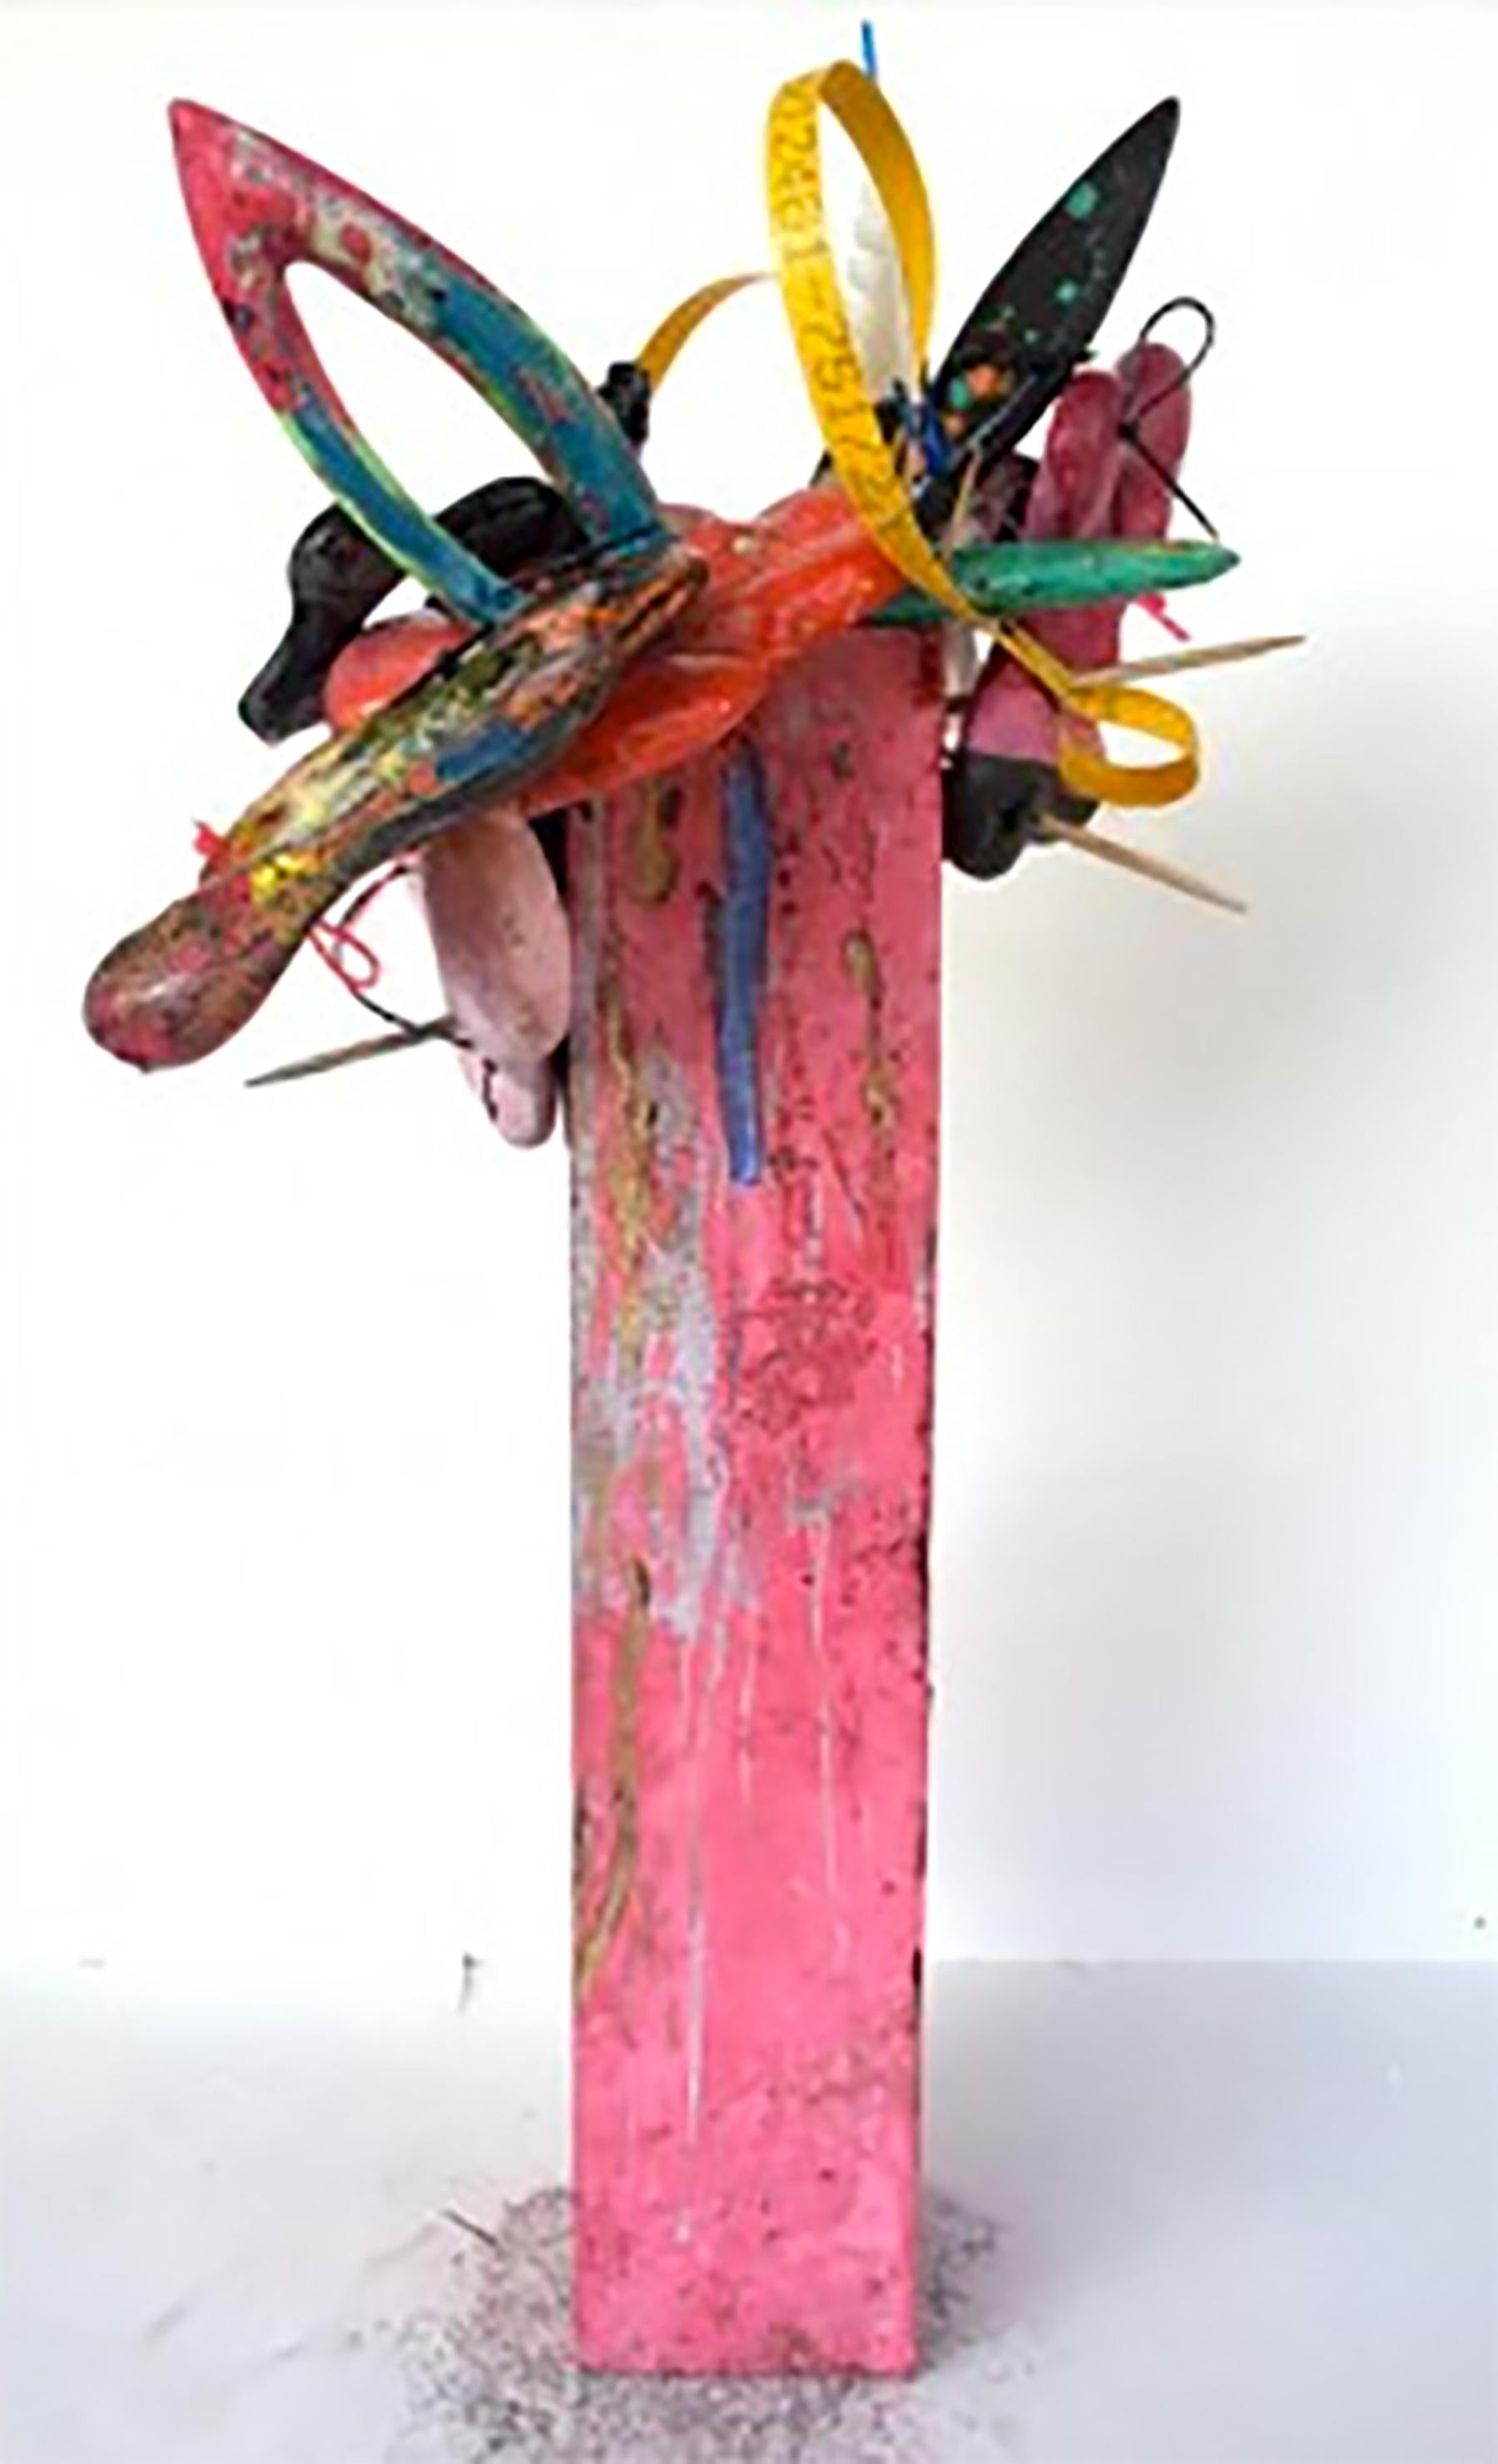 Abstract Sculpture Duane Paul - ""Arrangement abstrait -  Ciment, résine, plastique, fermetures éclair, sangles industrielles